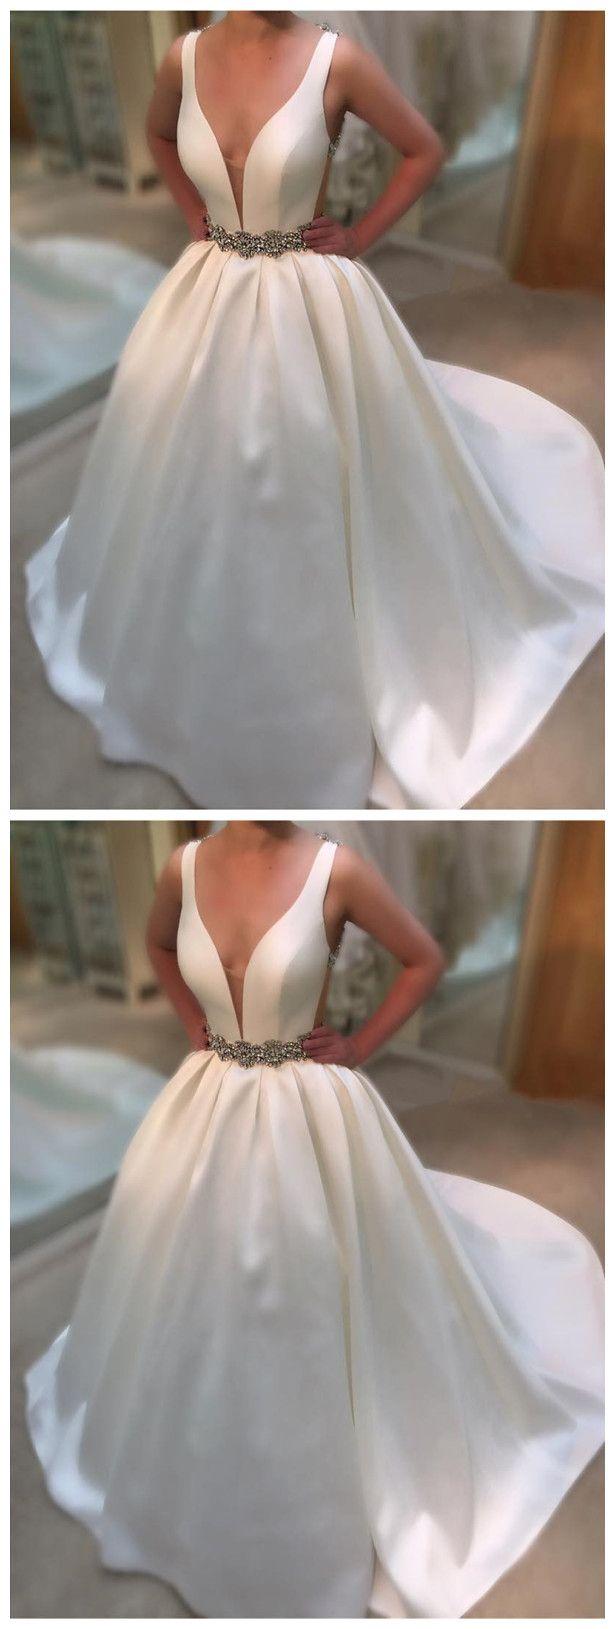 زفاف - Wedding Dresses, Wedding Gown,Deep V Neck White Satin Ball Gowns Wedding Dresses Vintage Bridal Gowns From Mfprom